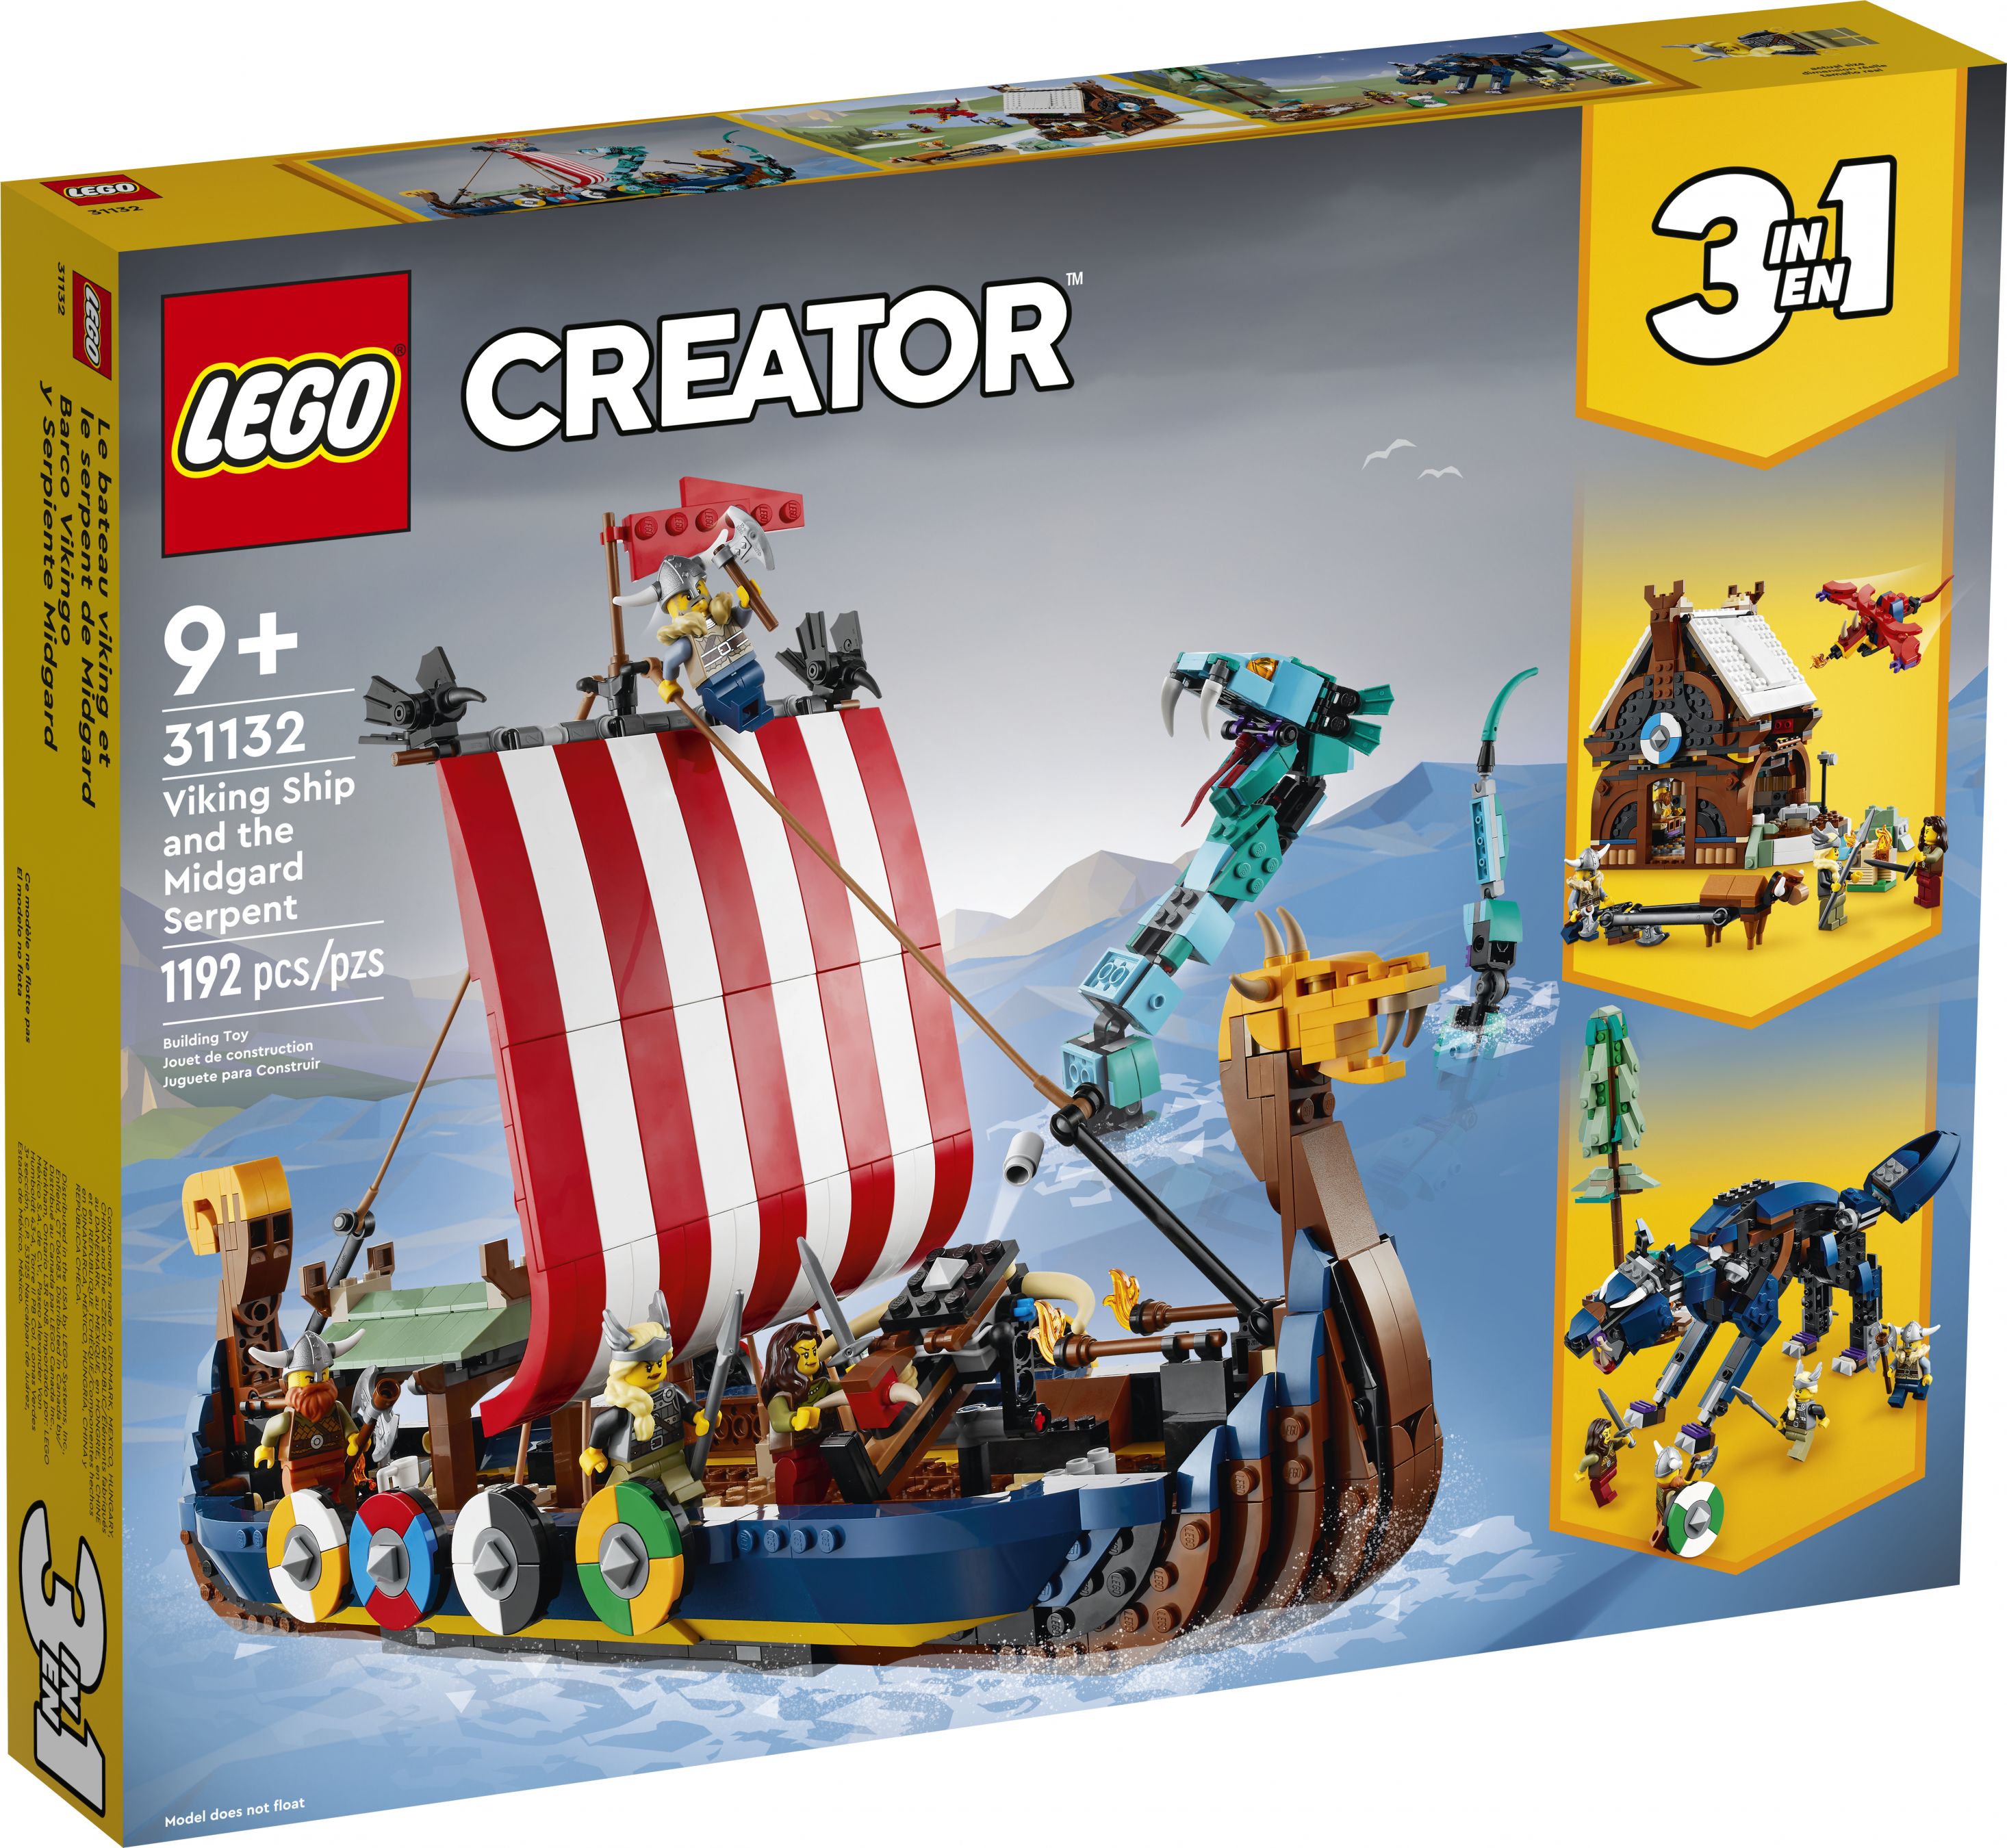 LEGO Creator 31132 Wikingerschiff mit Midgardschlange LEGO_31132_Box1_v39.jpg